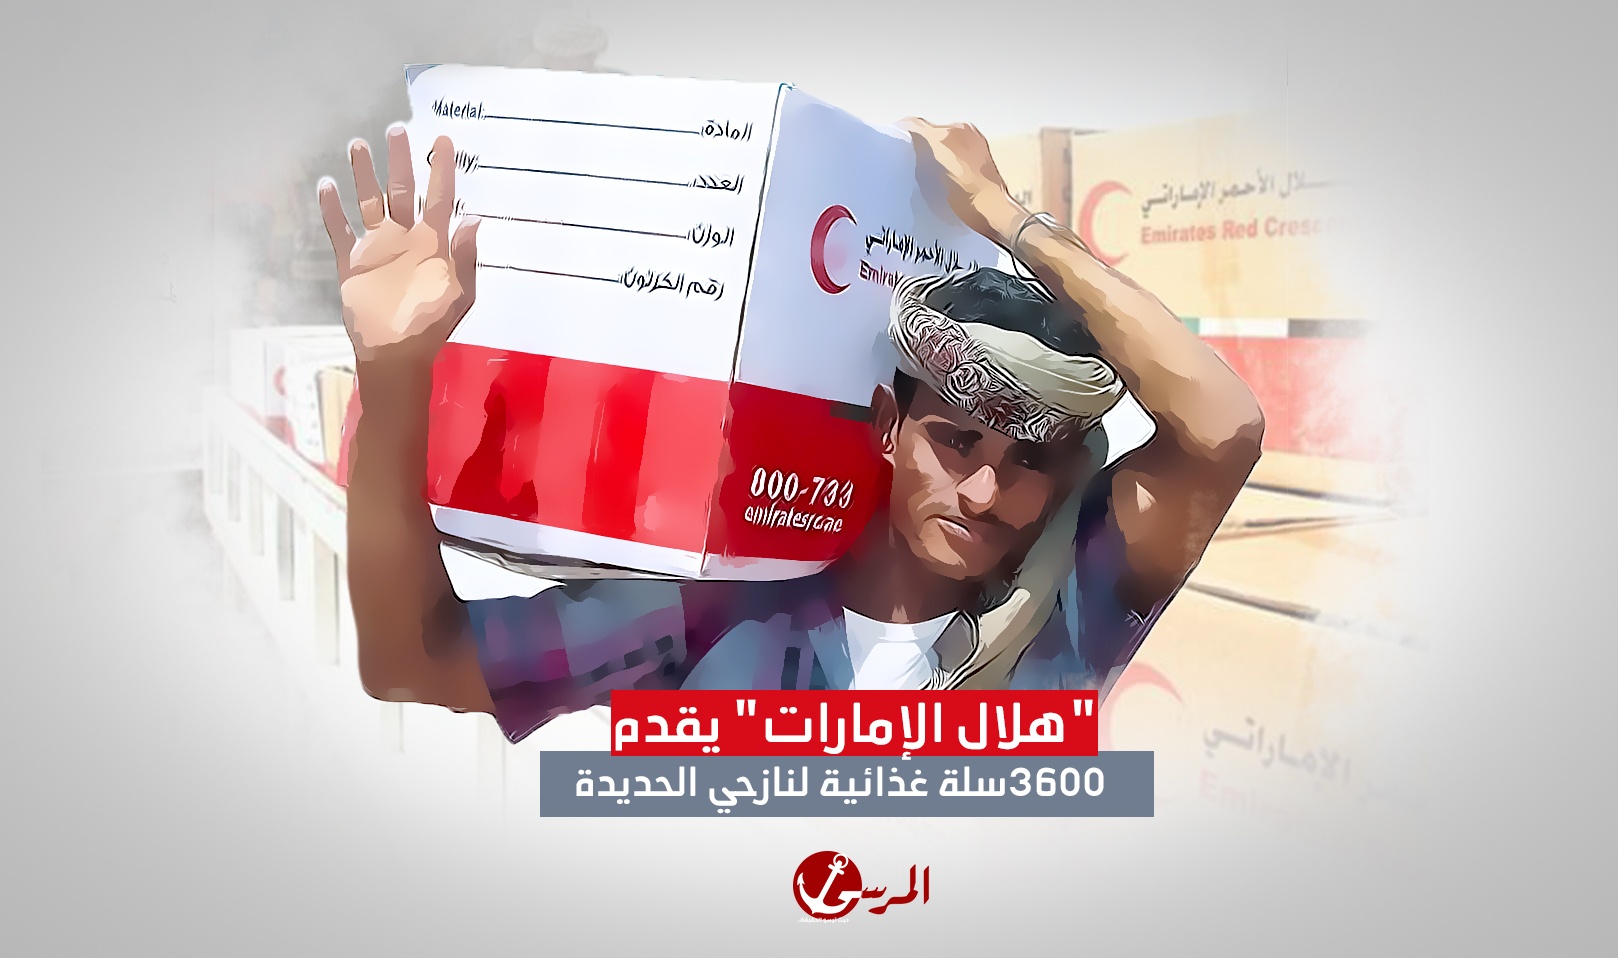 "هلال الإمارات" قدم مساعدات غذائية لـ3600 أسرة نازحه بالحديدة في نوفمبر